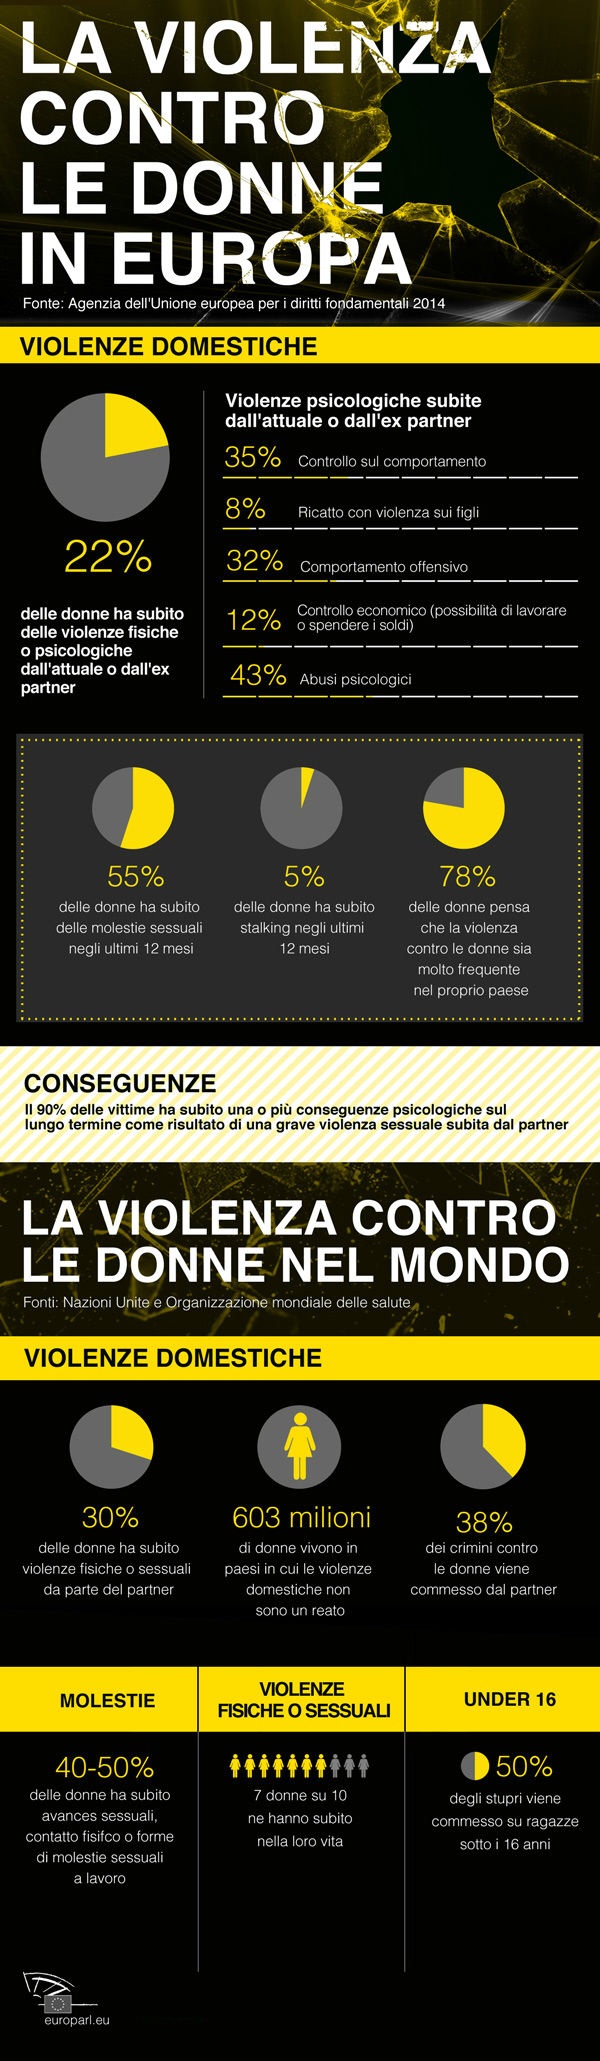 Infografica violenza donne